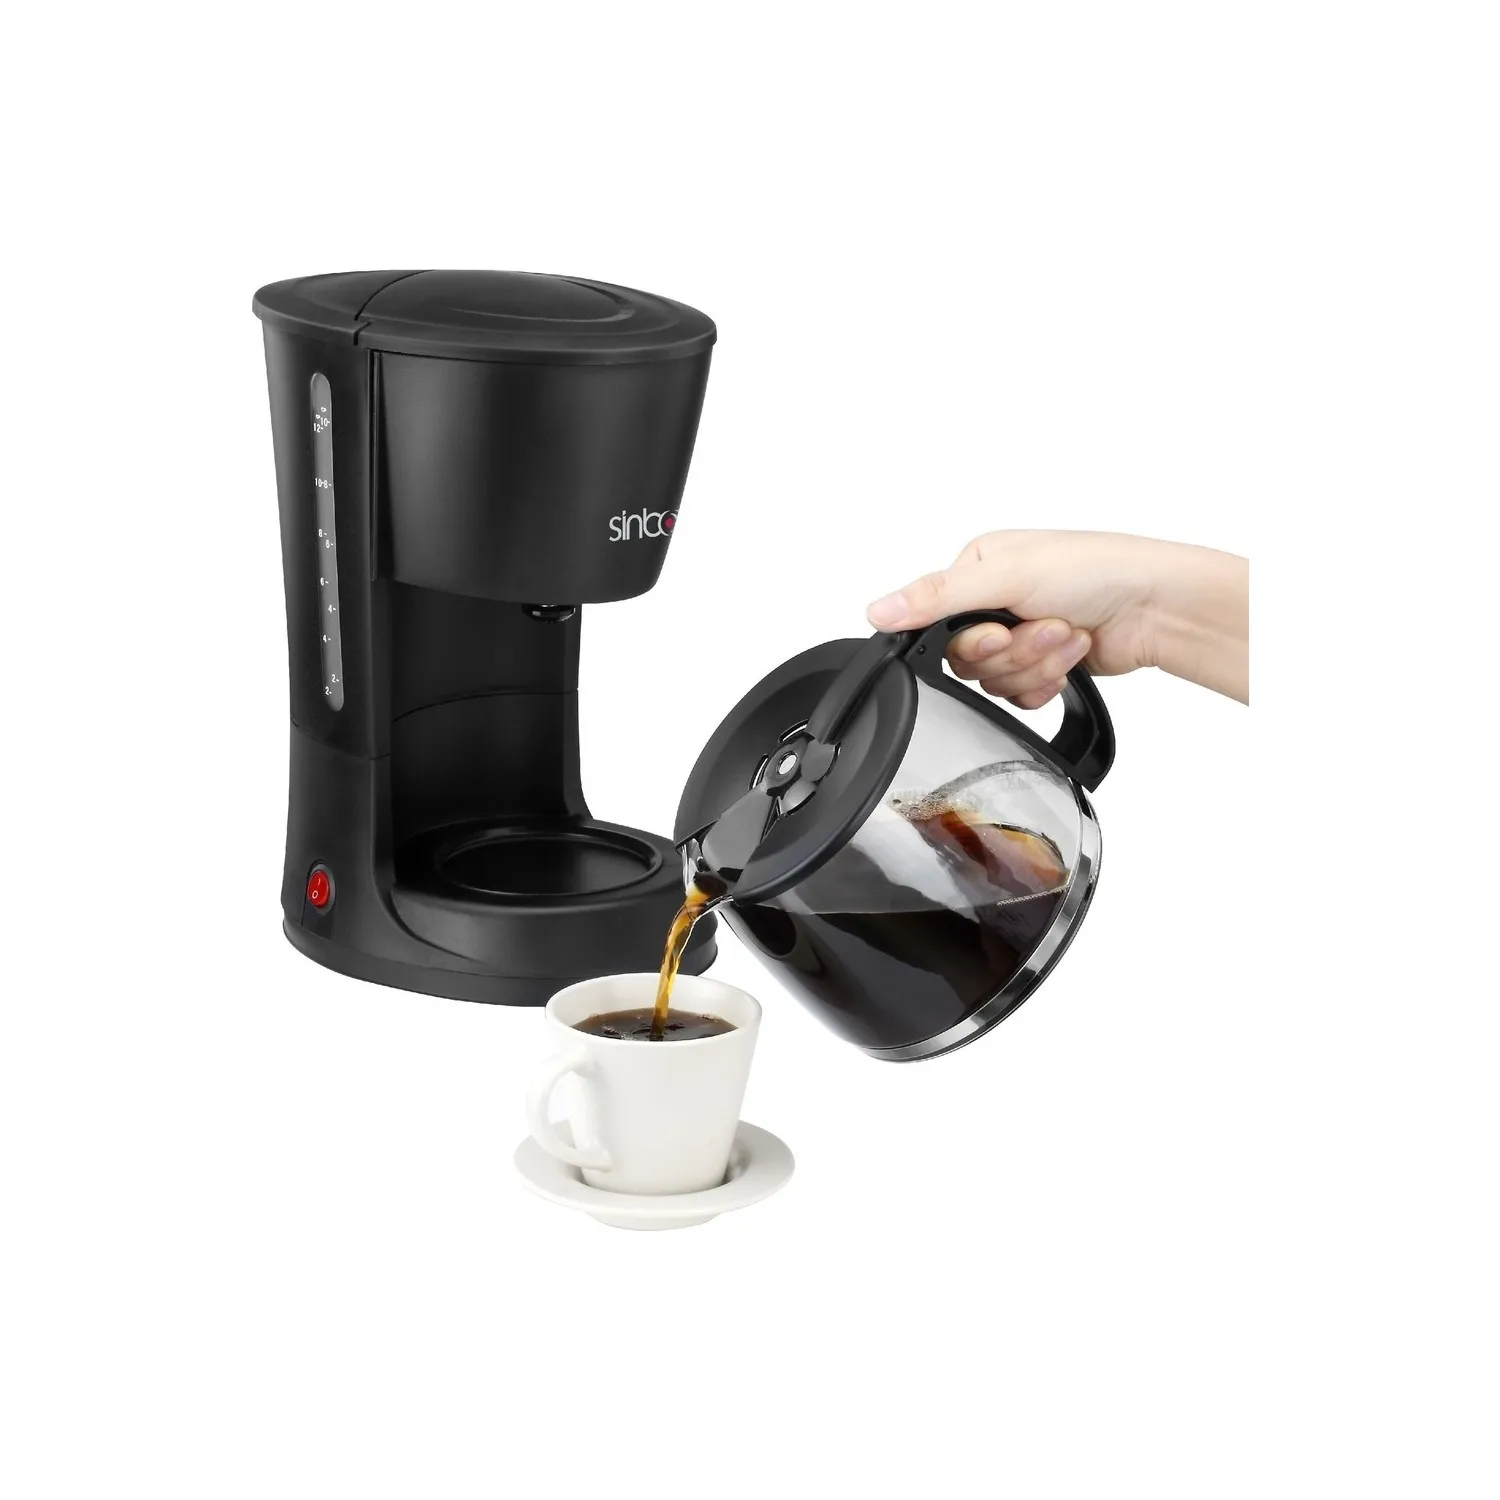 

Кофе-машина Sinbo SCM-2938, автоматическая кофеварка на 12 чашек, практичная, вкусная, 800 Вт, стеклянная чаша, качественная, стильный дизайн